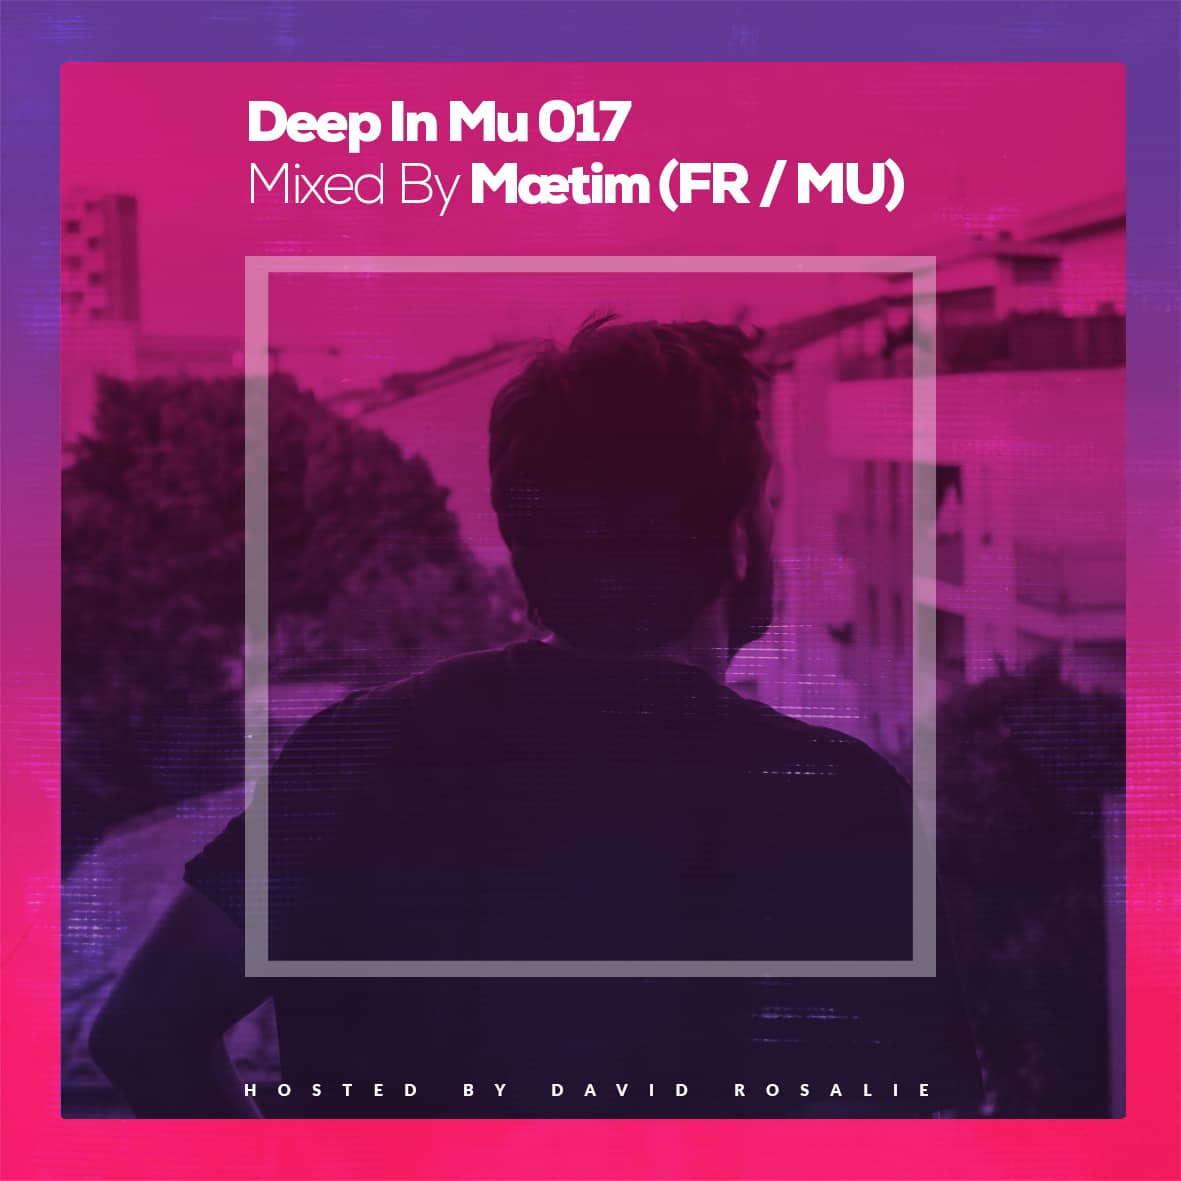 Deep In Mu 017 Mixed By Maetim (FR/MU)